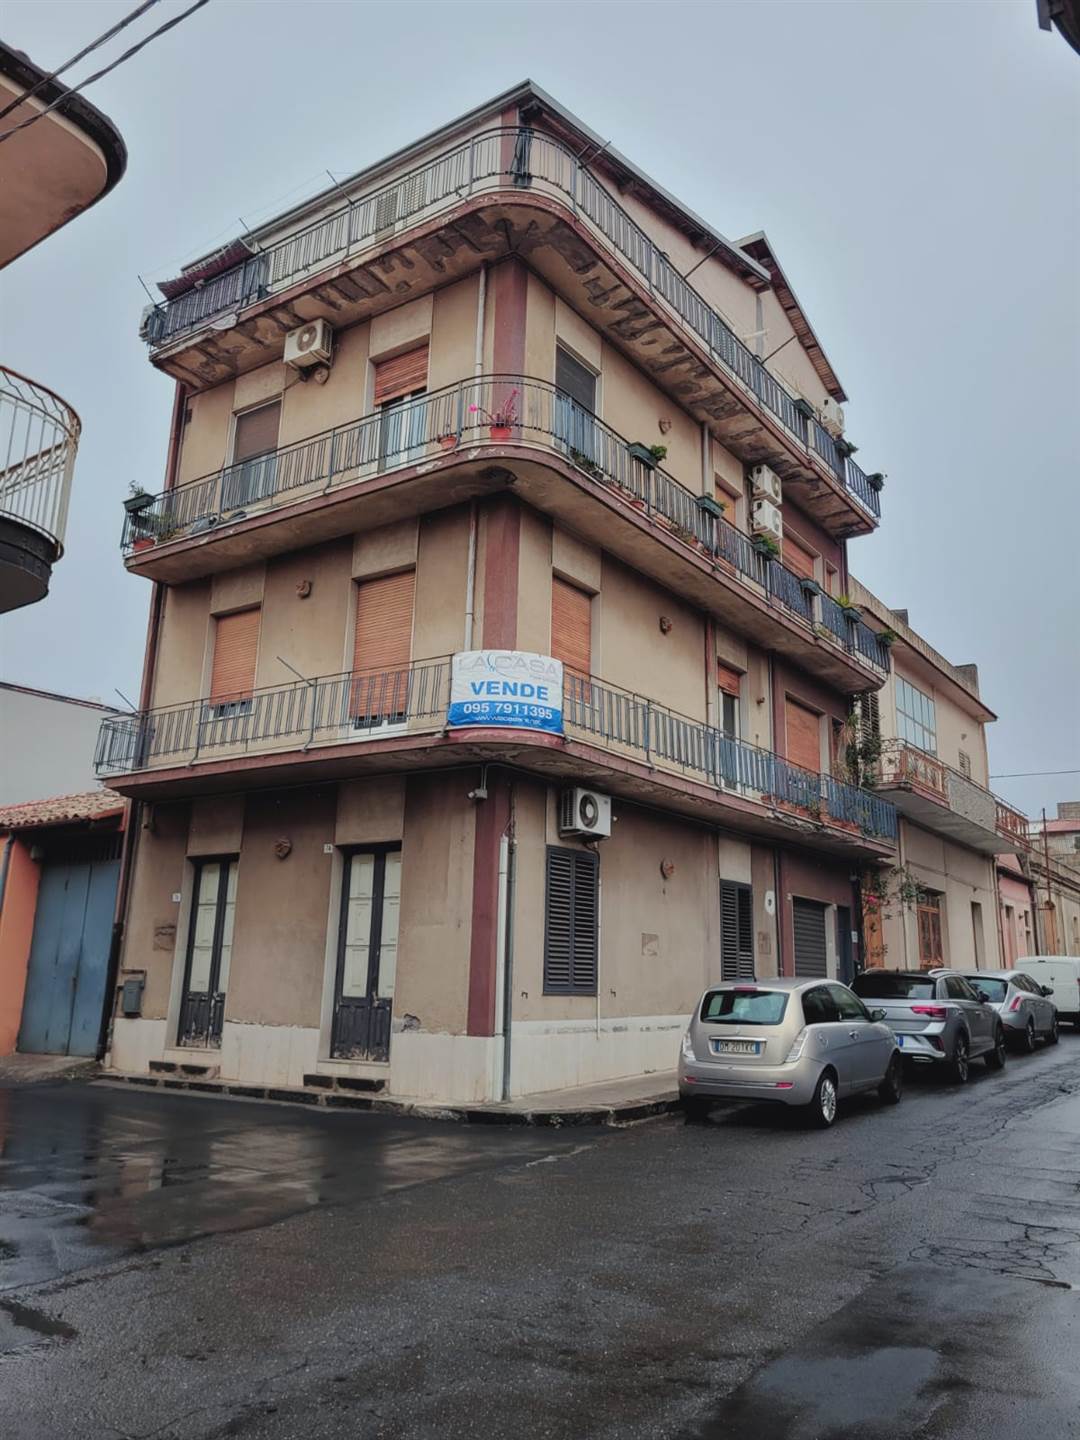 Appartamento in vendita a Belpasso, 3 locali, prezzo € 60.000 | PortaleAgenzieImmobiliari.it